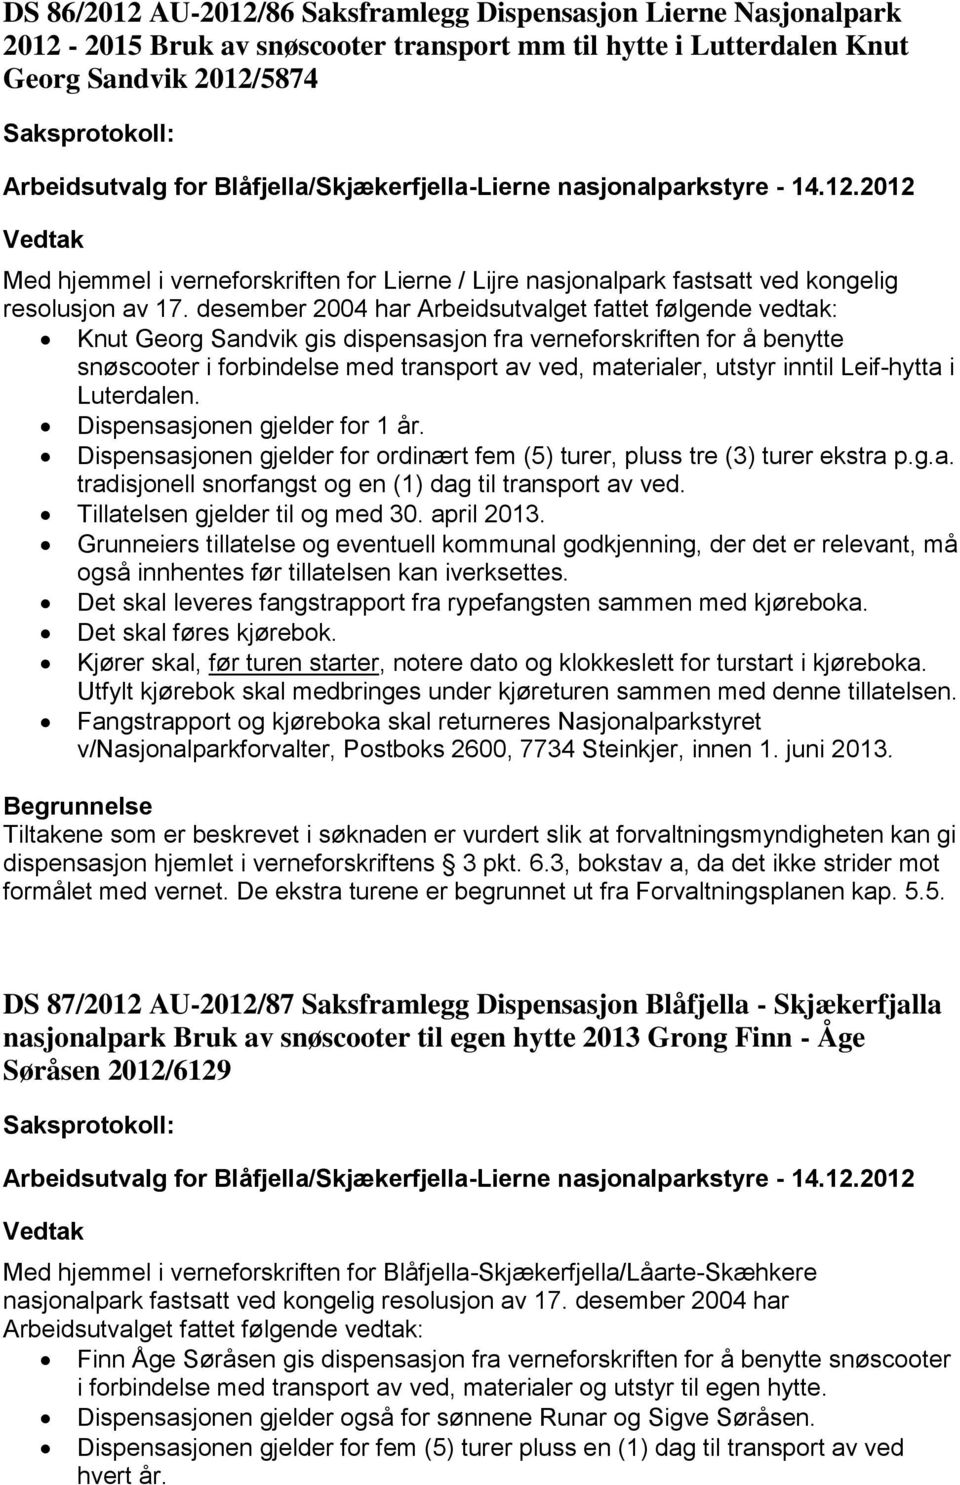 desember 2004 har Knut Georg Sandvik gis dispensasjon fra verneforskriften for å benytte snøscooter i forbindelse med transport av ved, materialer, utstyr inntil Leif-hytta i Luterdalen.